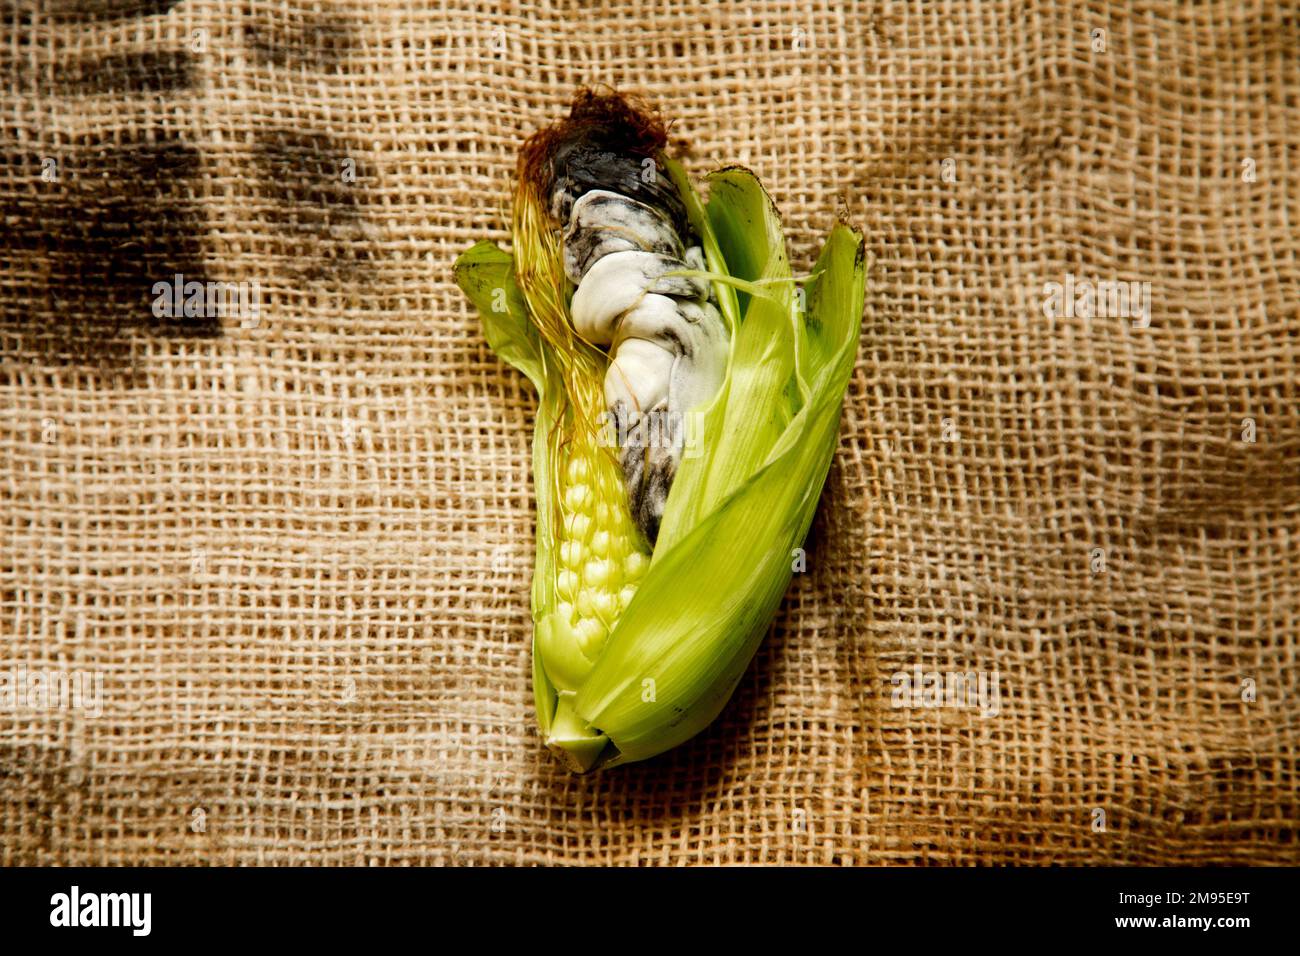 L'huitlacoche o cuitlacoche, è un fungo della famiglia delle Ustilaginacee, che cresce tra i grani di mais. Foto Stock